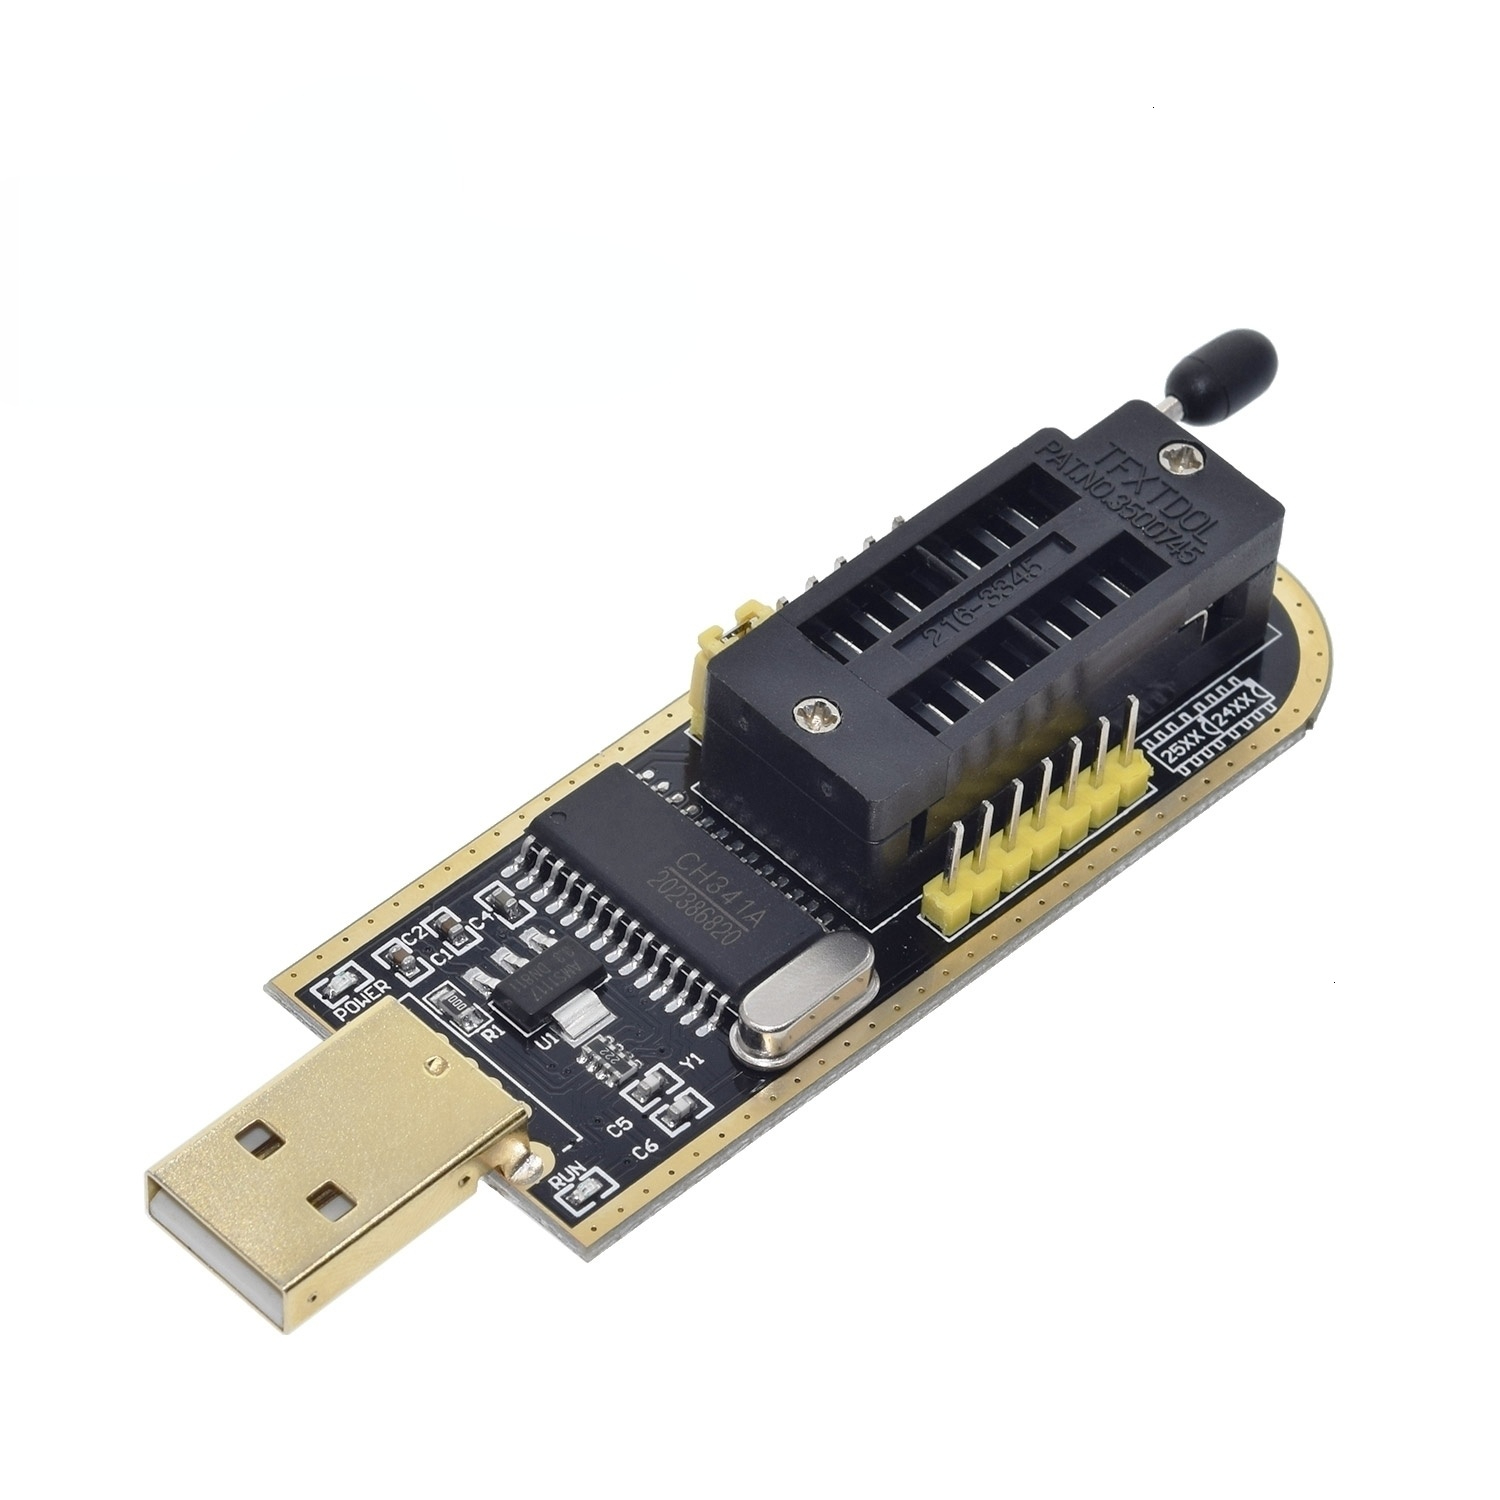 CH341A 24 25 Series EEPROM Flash BIOS USB Programmer 